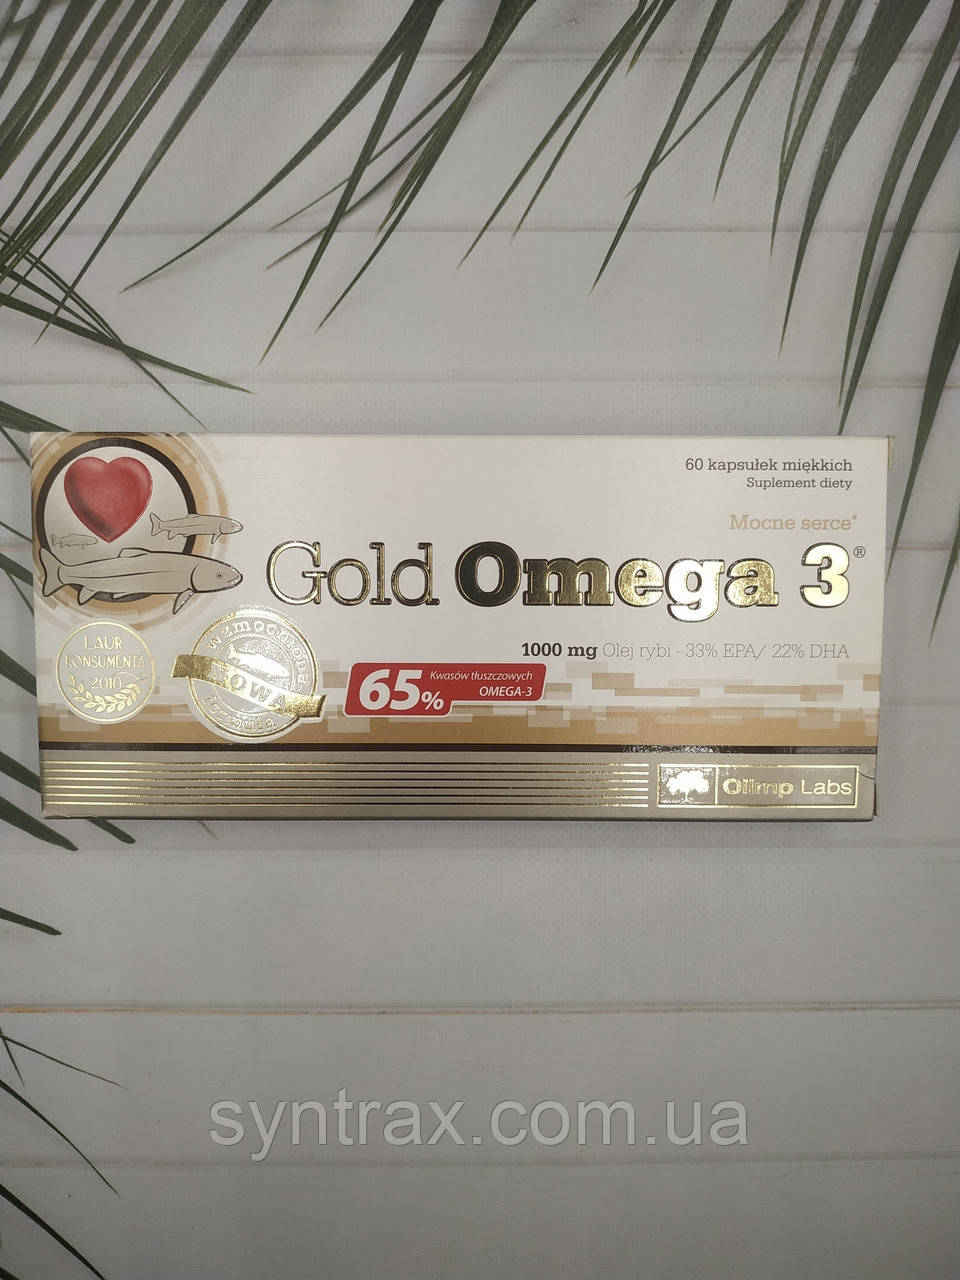 Gold Omega 3 дата до 08/22 65% EPA & DHA Olimp Labs 60 caps. омега 3 риб'ячий жир